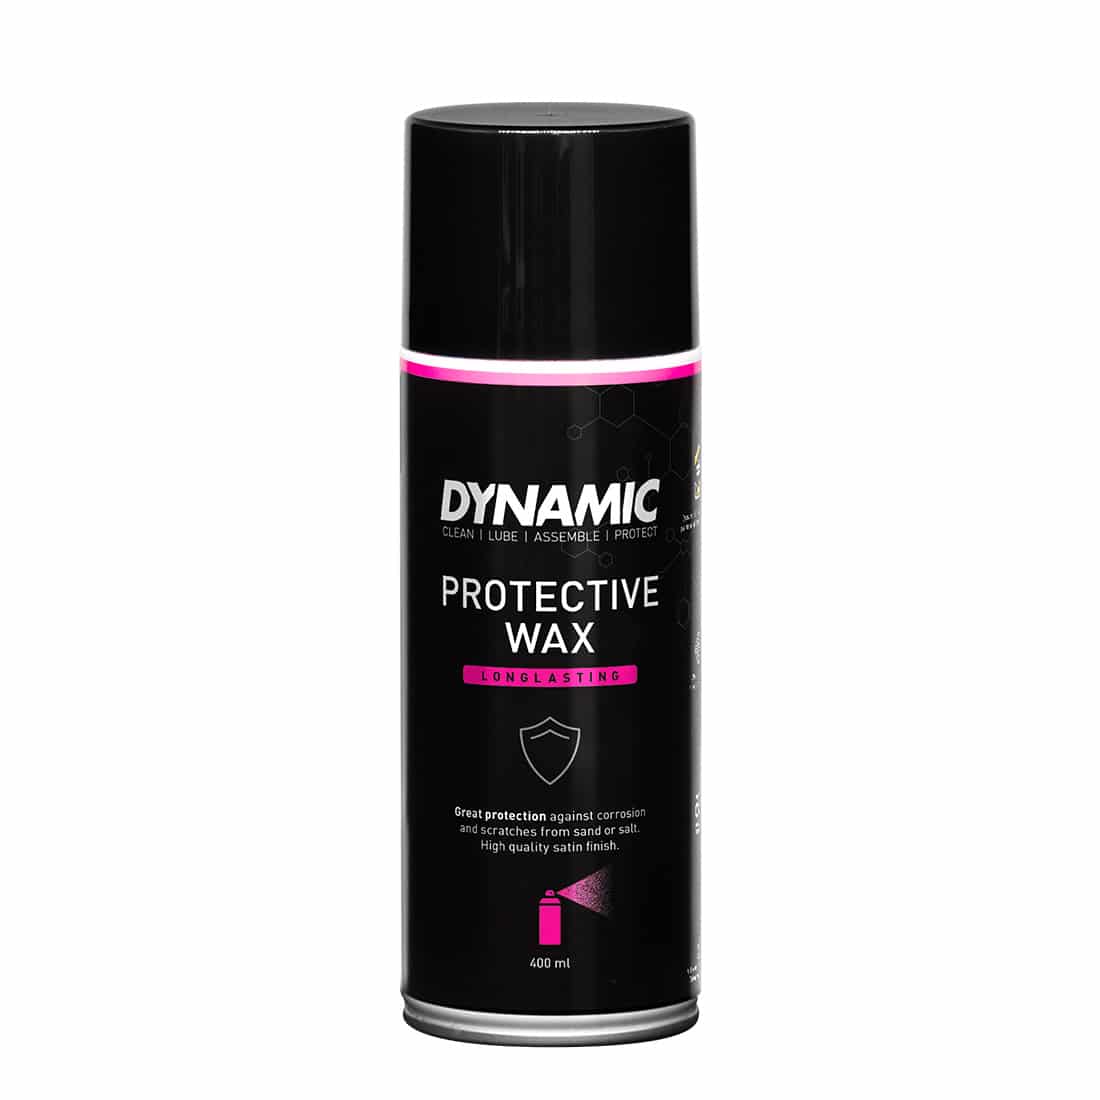 Produktbild von Dynamic Protective Wax - Schutzwachs - 400ml